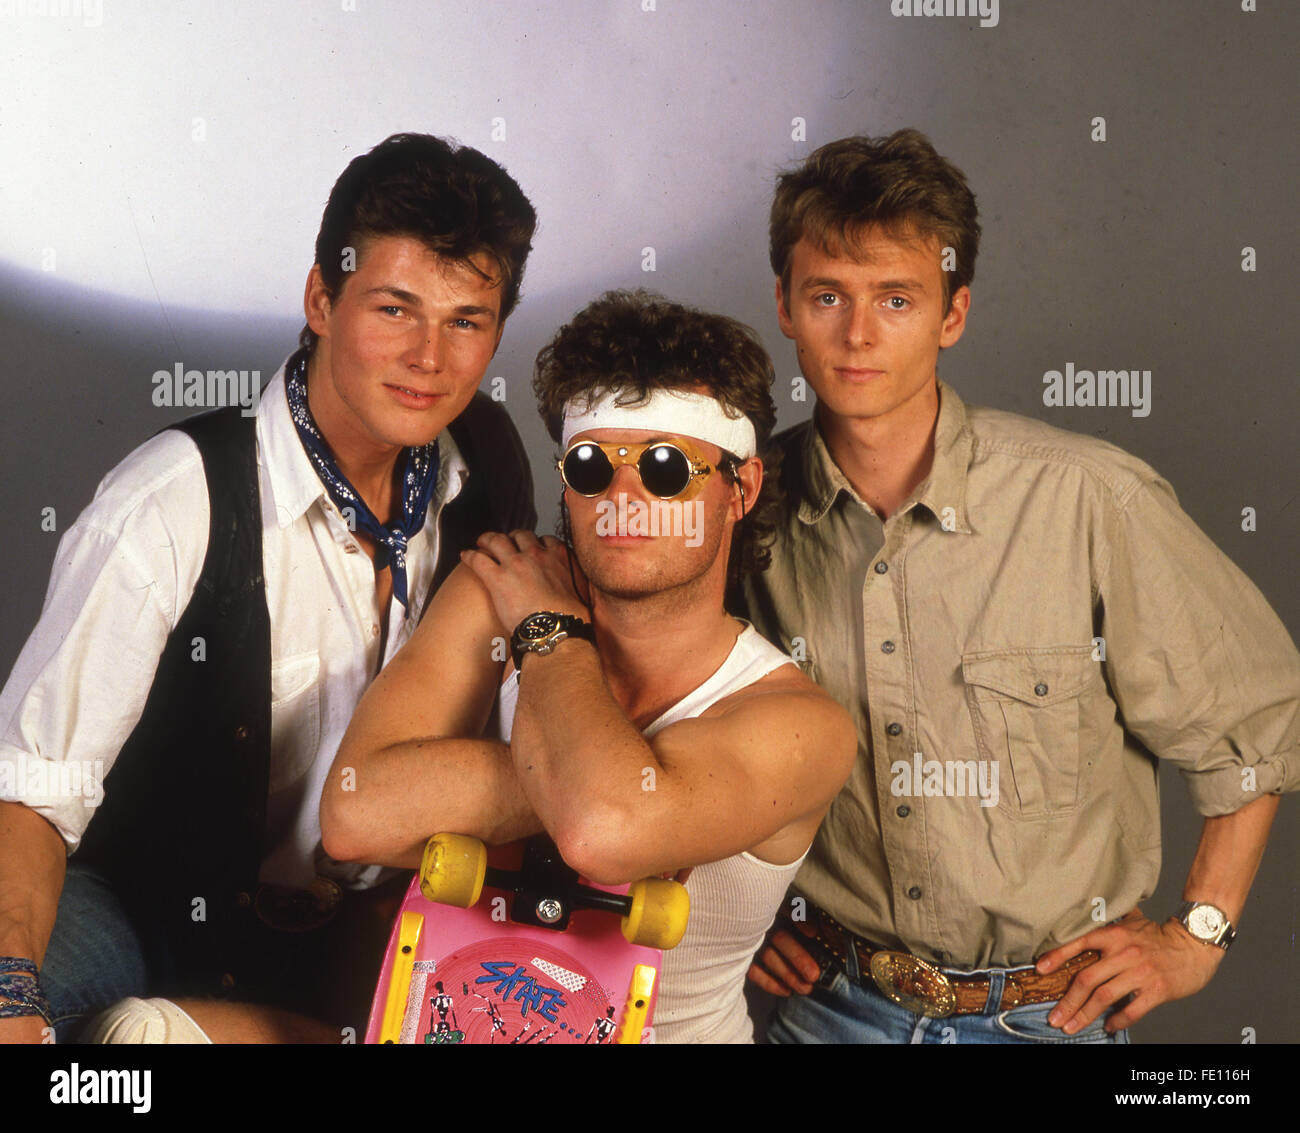 A-HA  Norwegian pop group about 1986. From left: Morten Harket, Mags Furuholmen, Pal Waaktaar Stock Photo